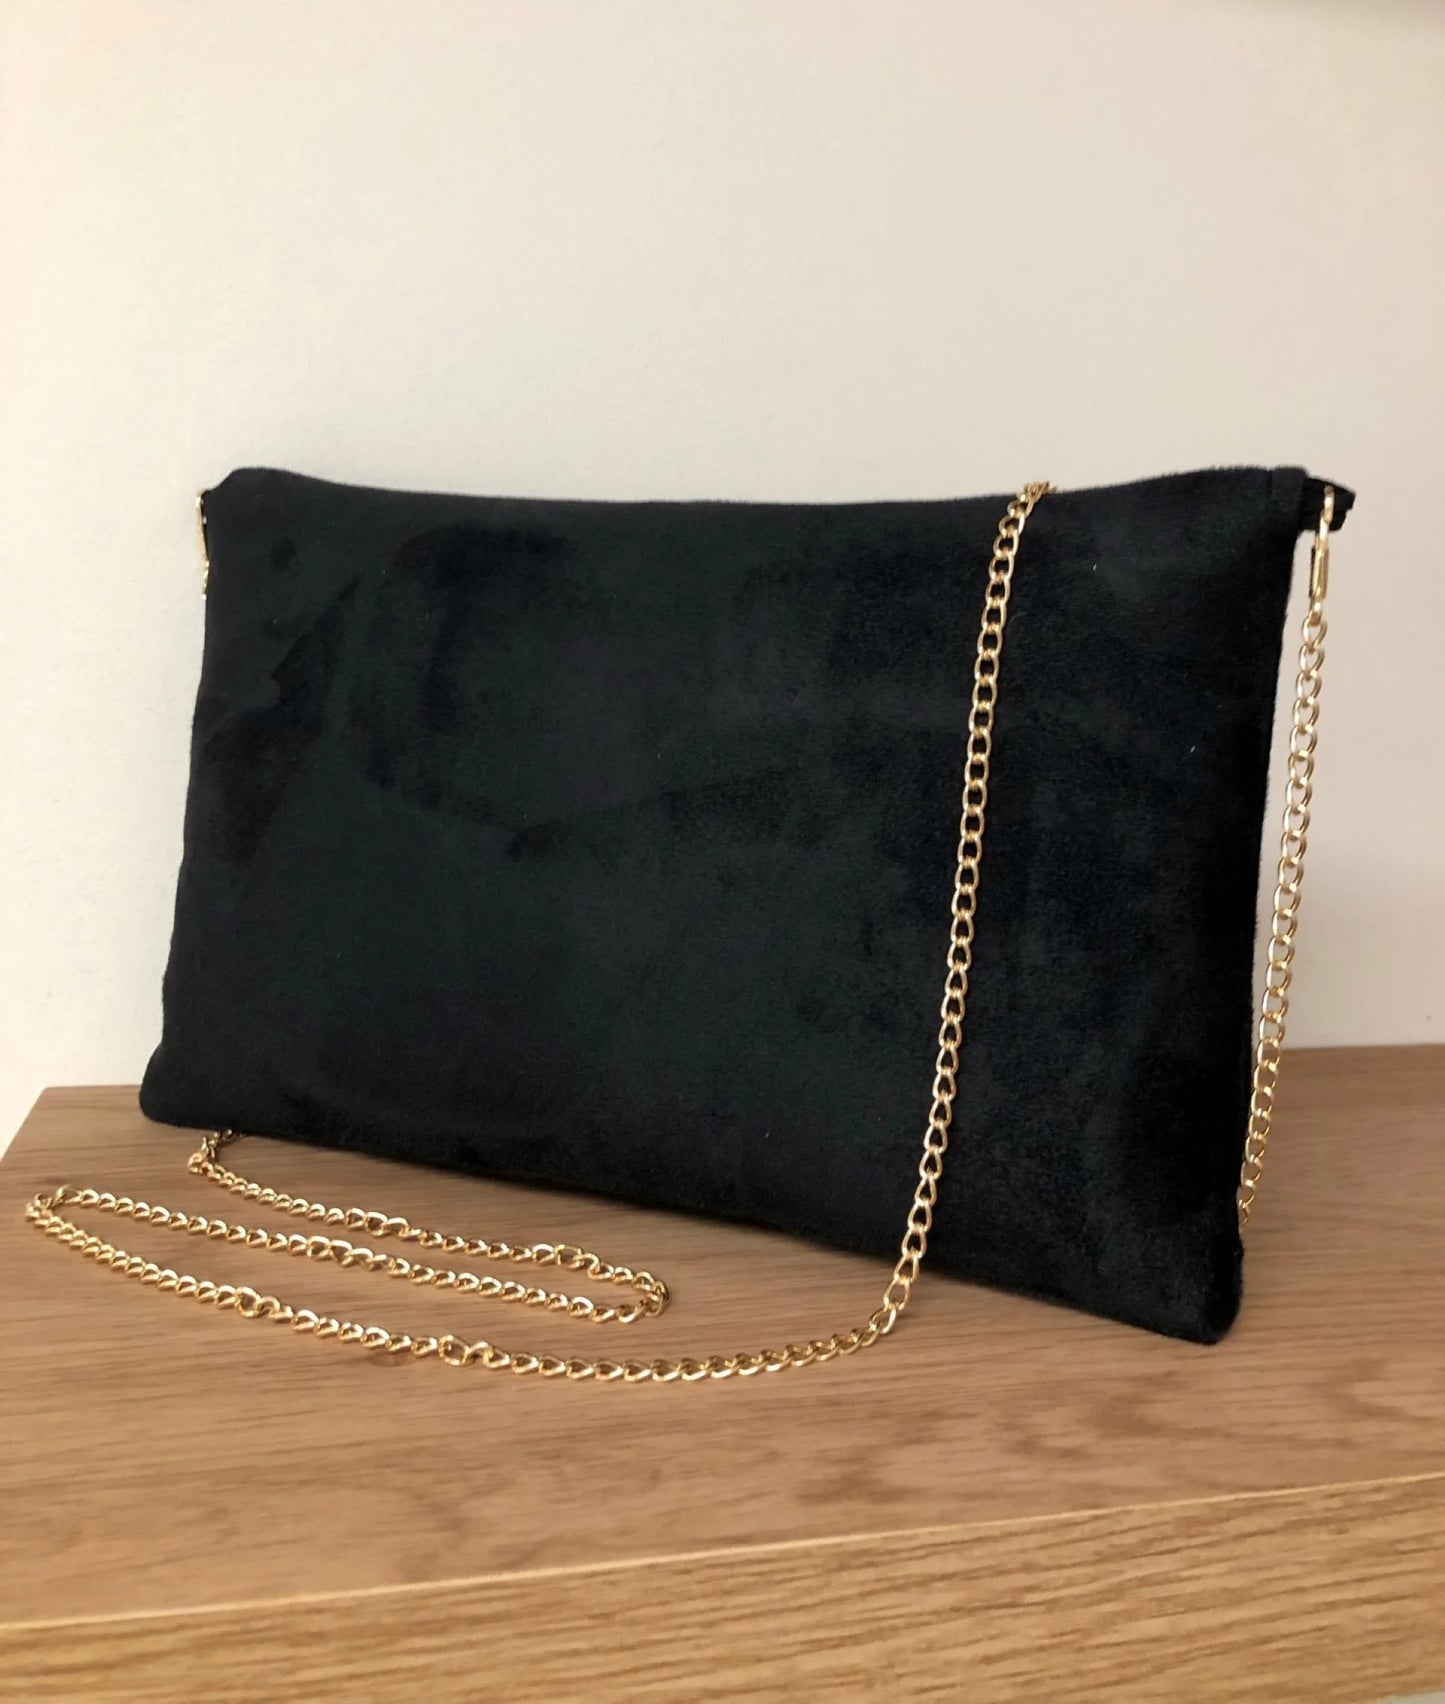 Le dos du sac pochette Isa en suédine noire et paillettes dorées, avec chainette amovible.